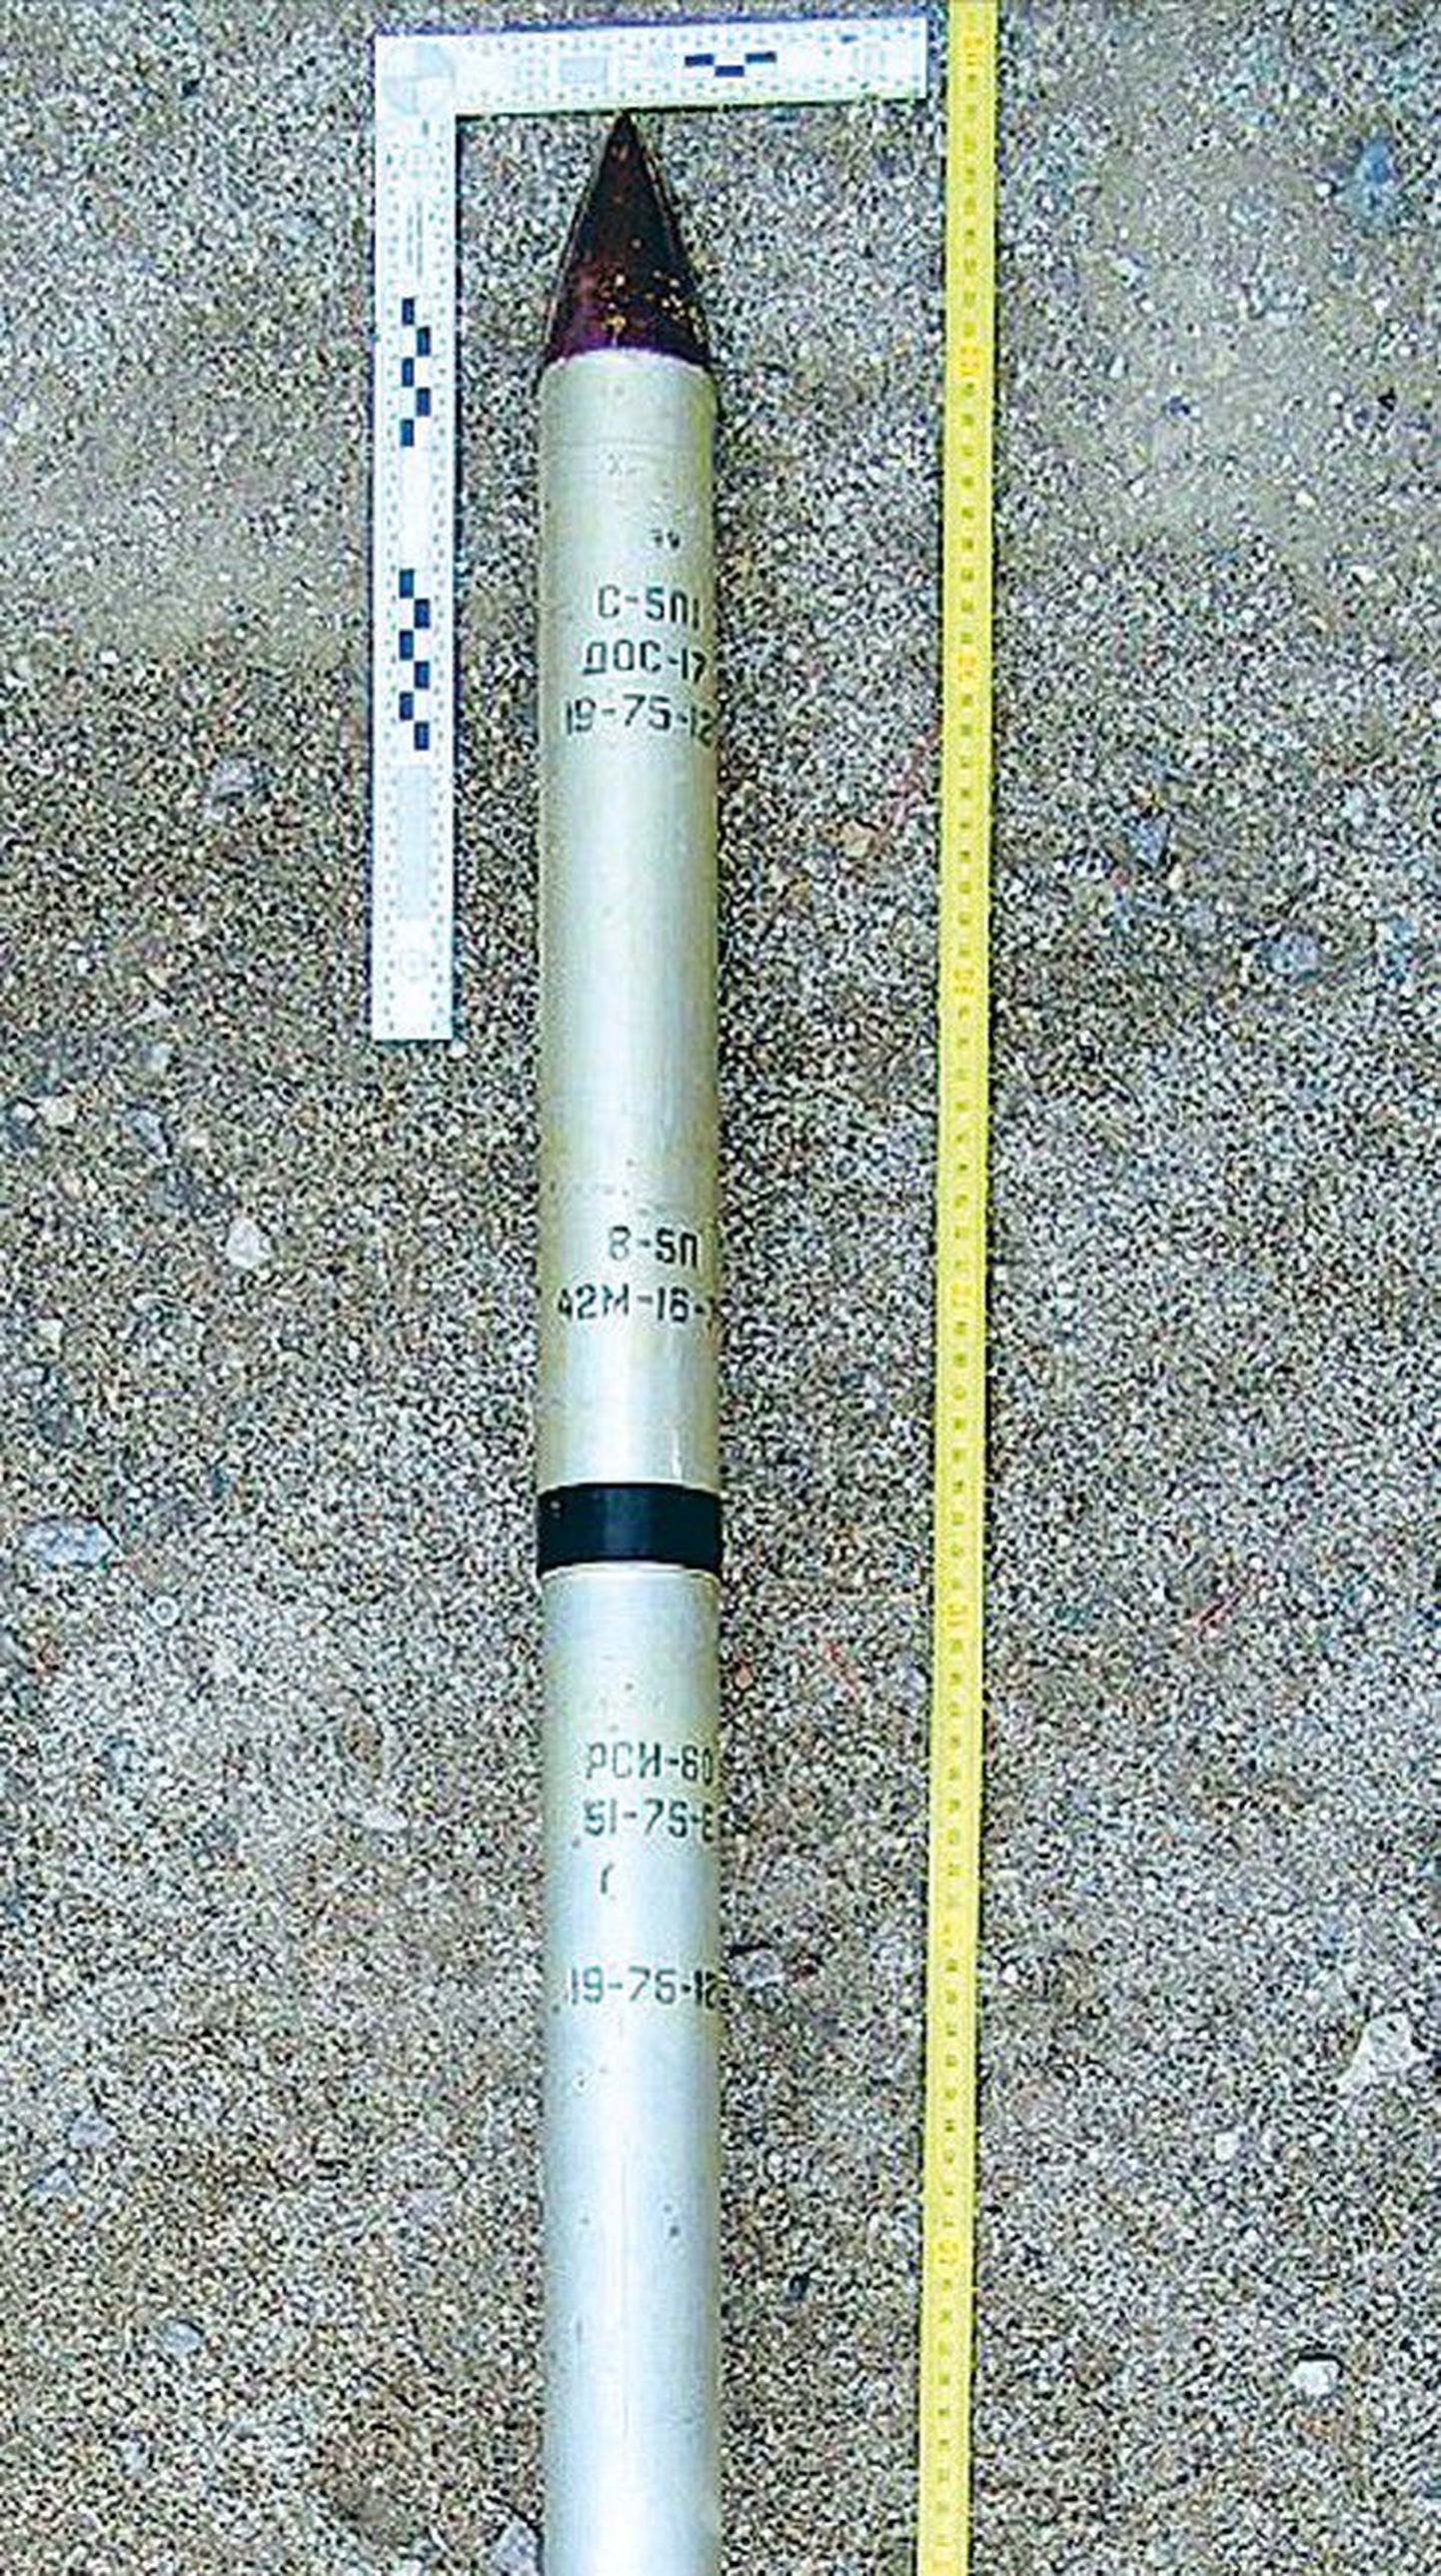 Järvamaal Paide lähedal metsast leitud 57-millimeetrine rakett on esimene omataoline leid Eestis.